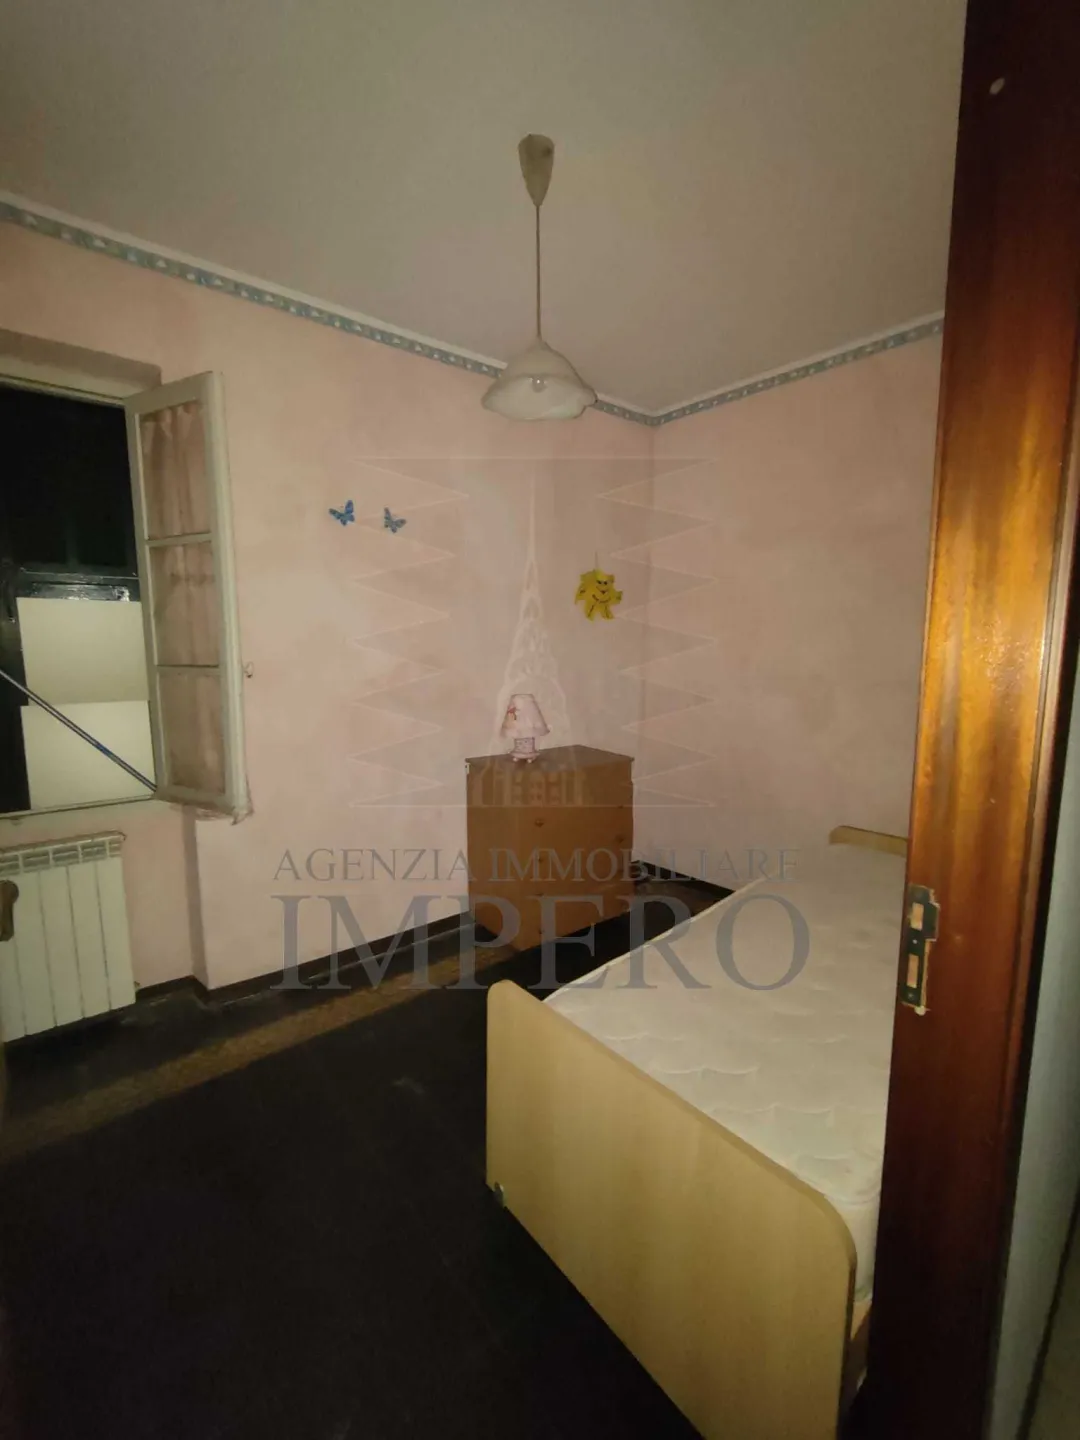 Immagine per Appartamento in vendita a Bordighera via Carlo Botta